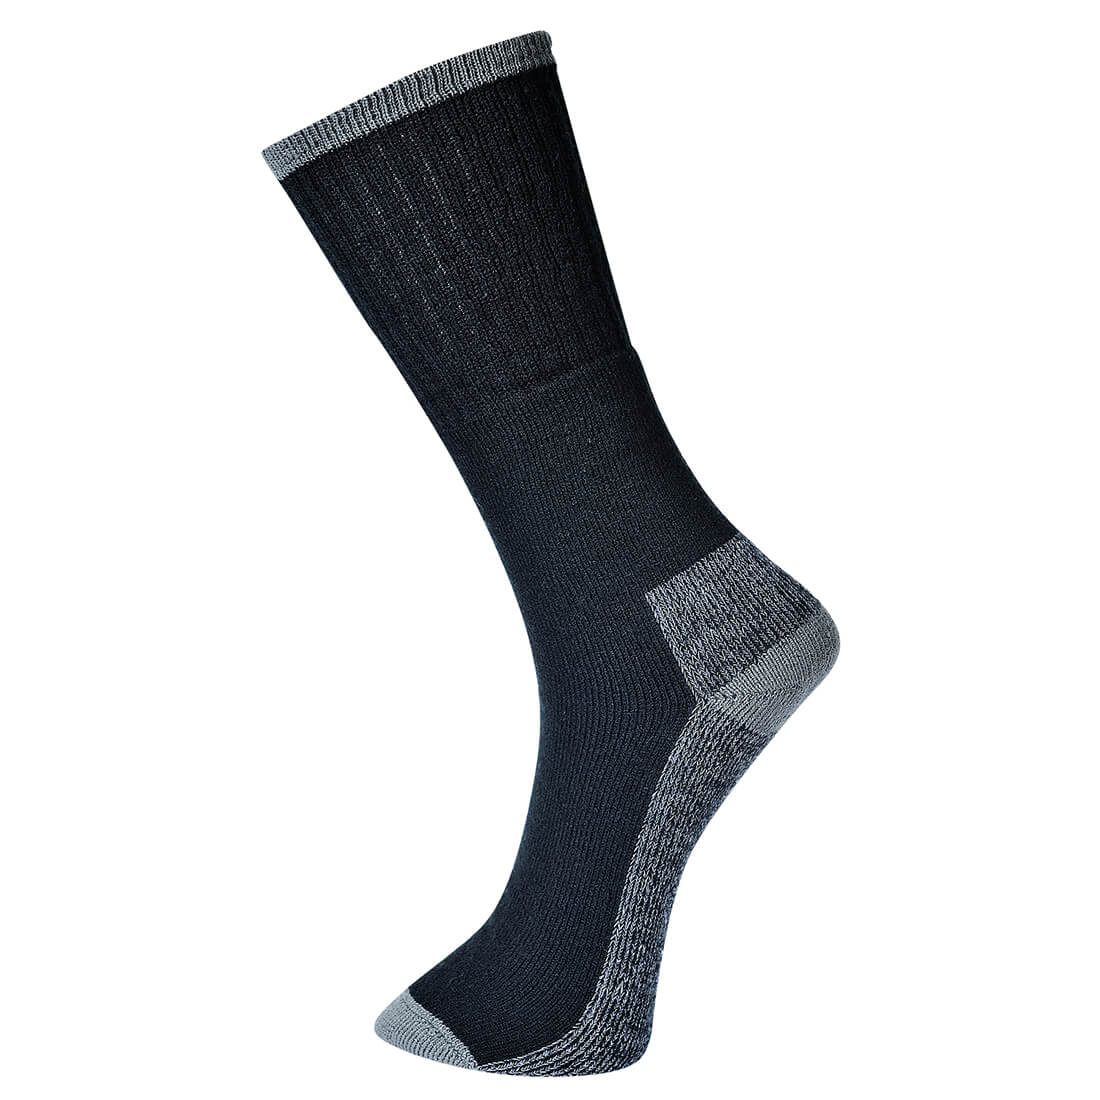 Image of Portwest Work Socks Black 6 - 9 Pack of 3